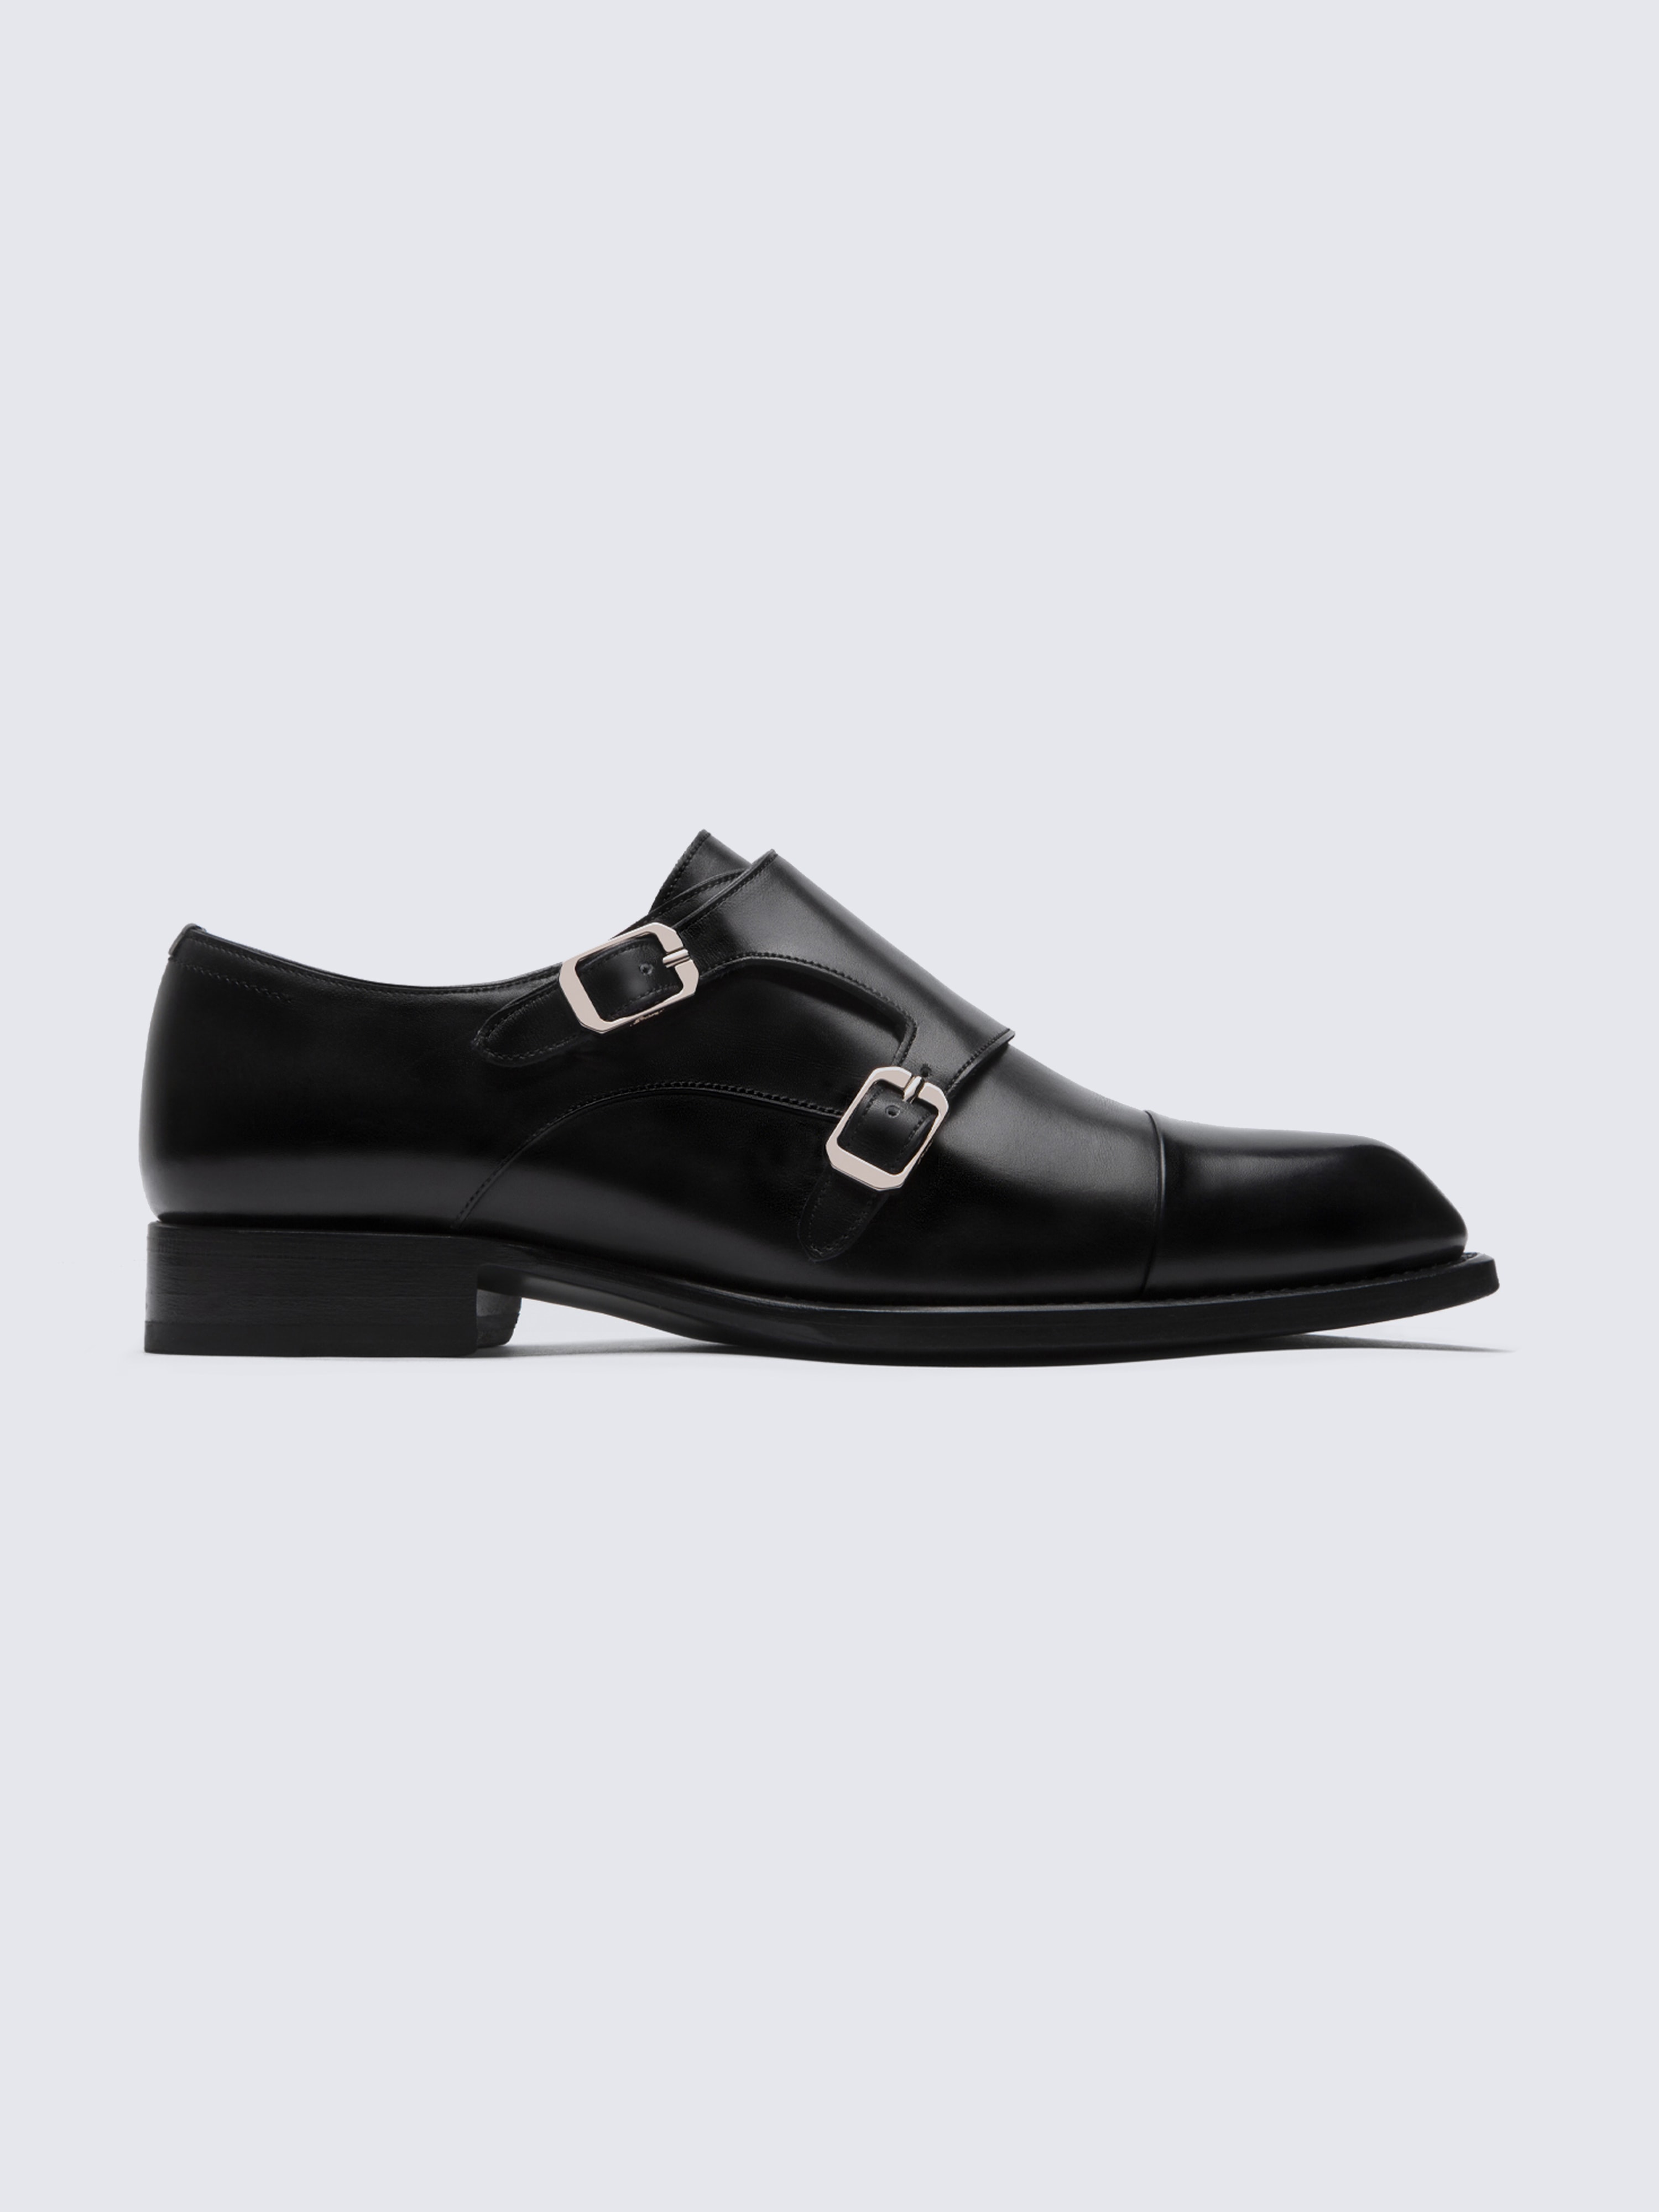 barm Forge Produktiv Black double monk shoes | Brioni® US Official Store